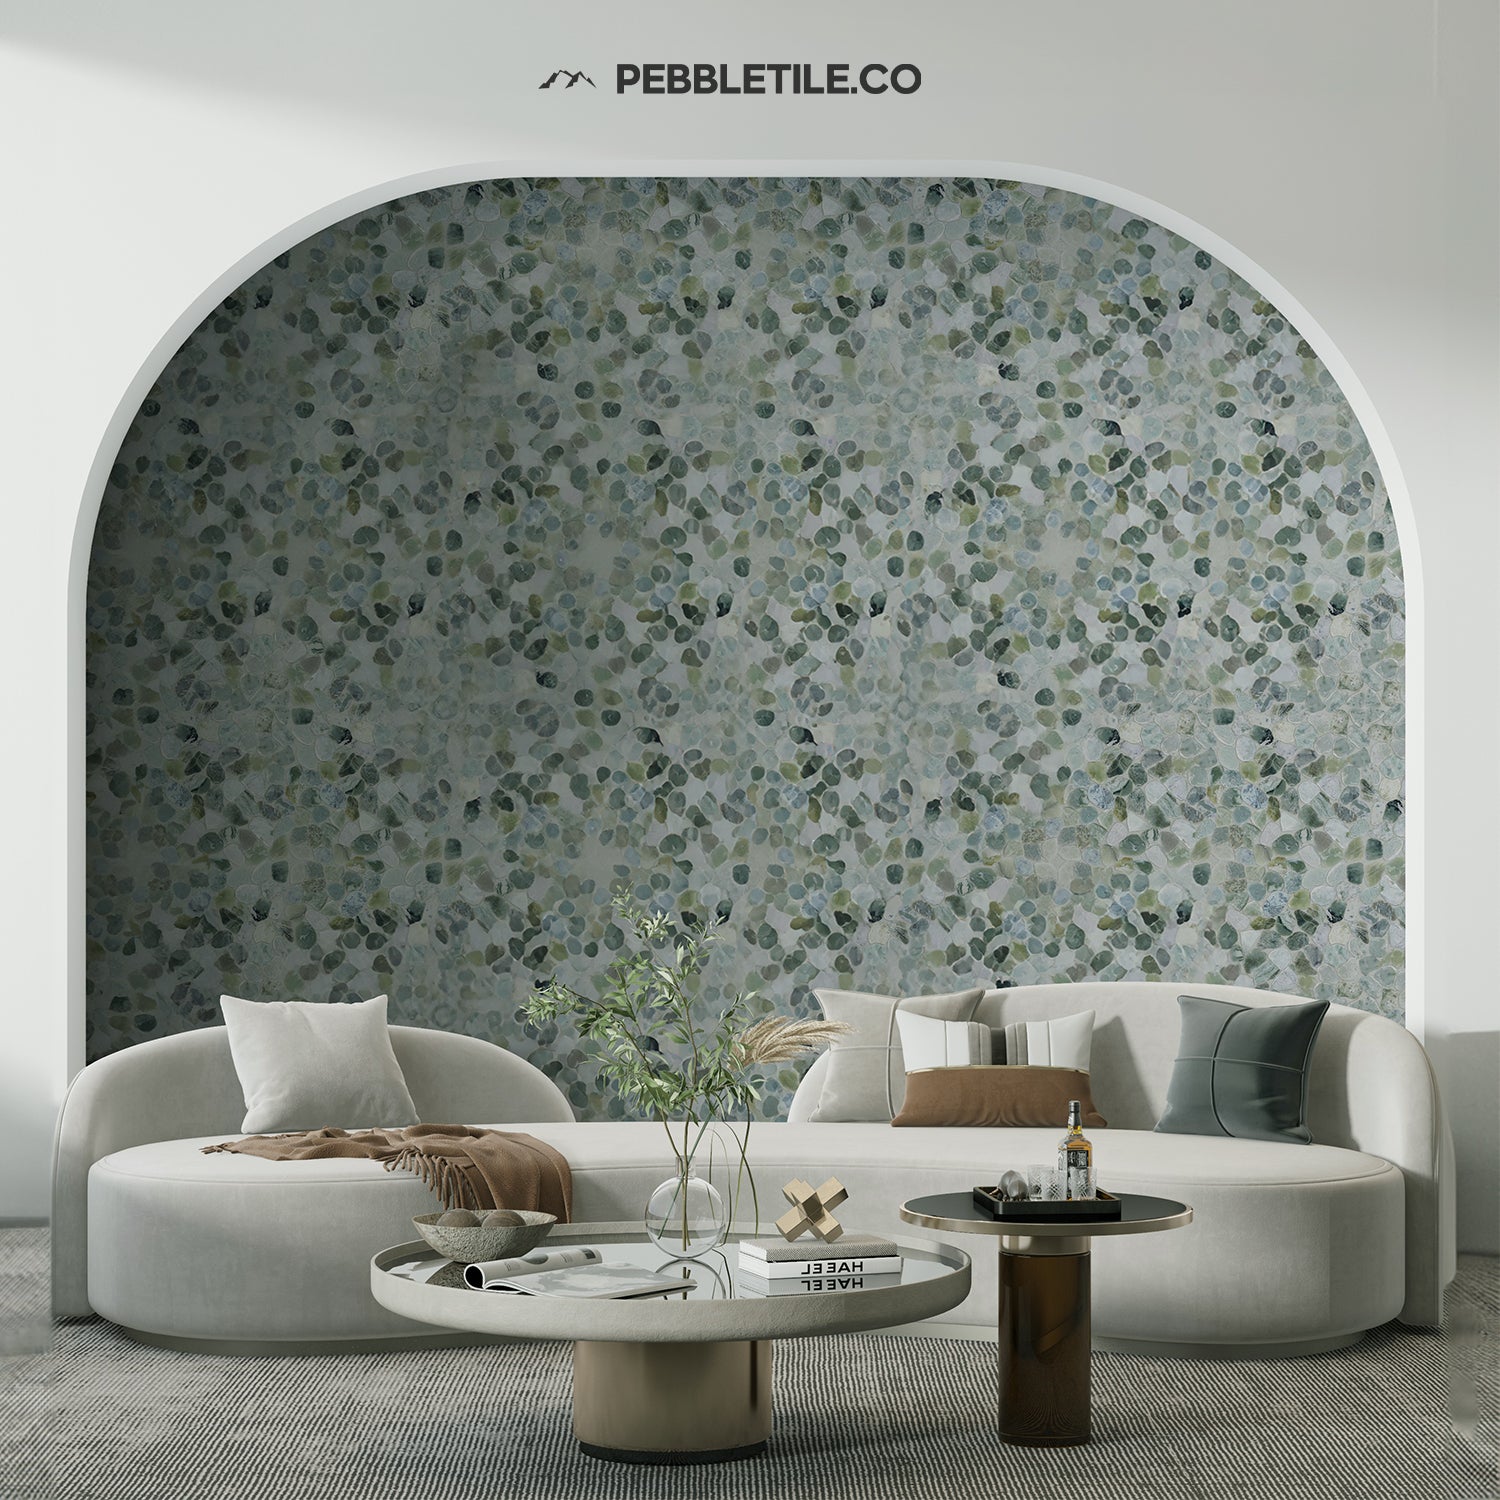 Ocean Mosaic Tile, Ocean Green Sliced Pebble Mosaic Wall & Floor Tile